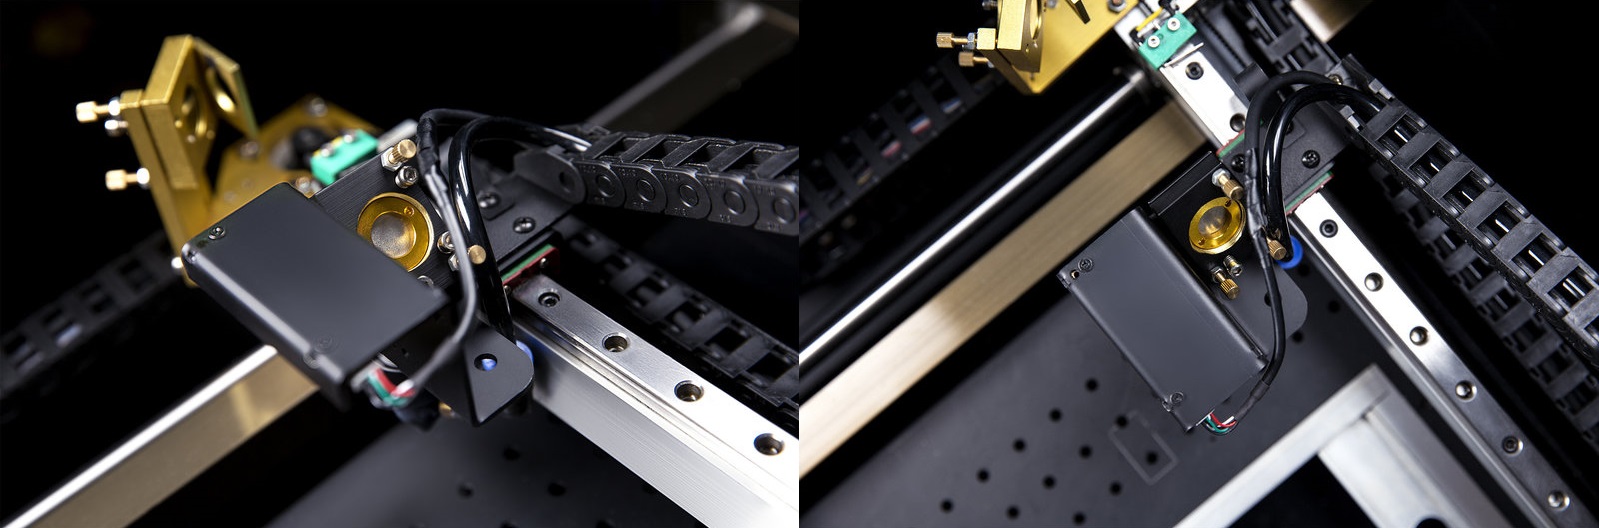 FLUX Beambox Pro - laserová řezačka - 50W lasery 